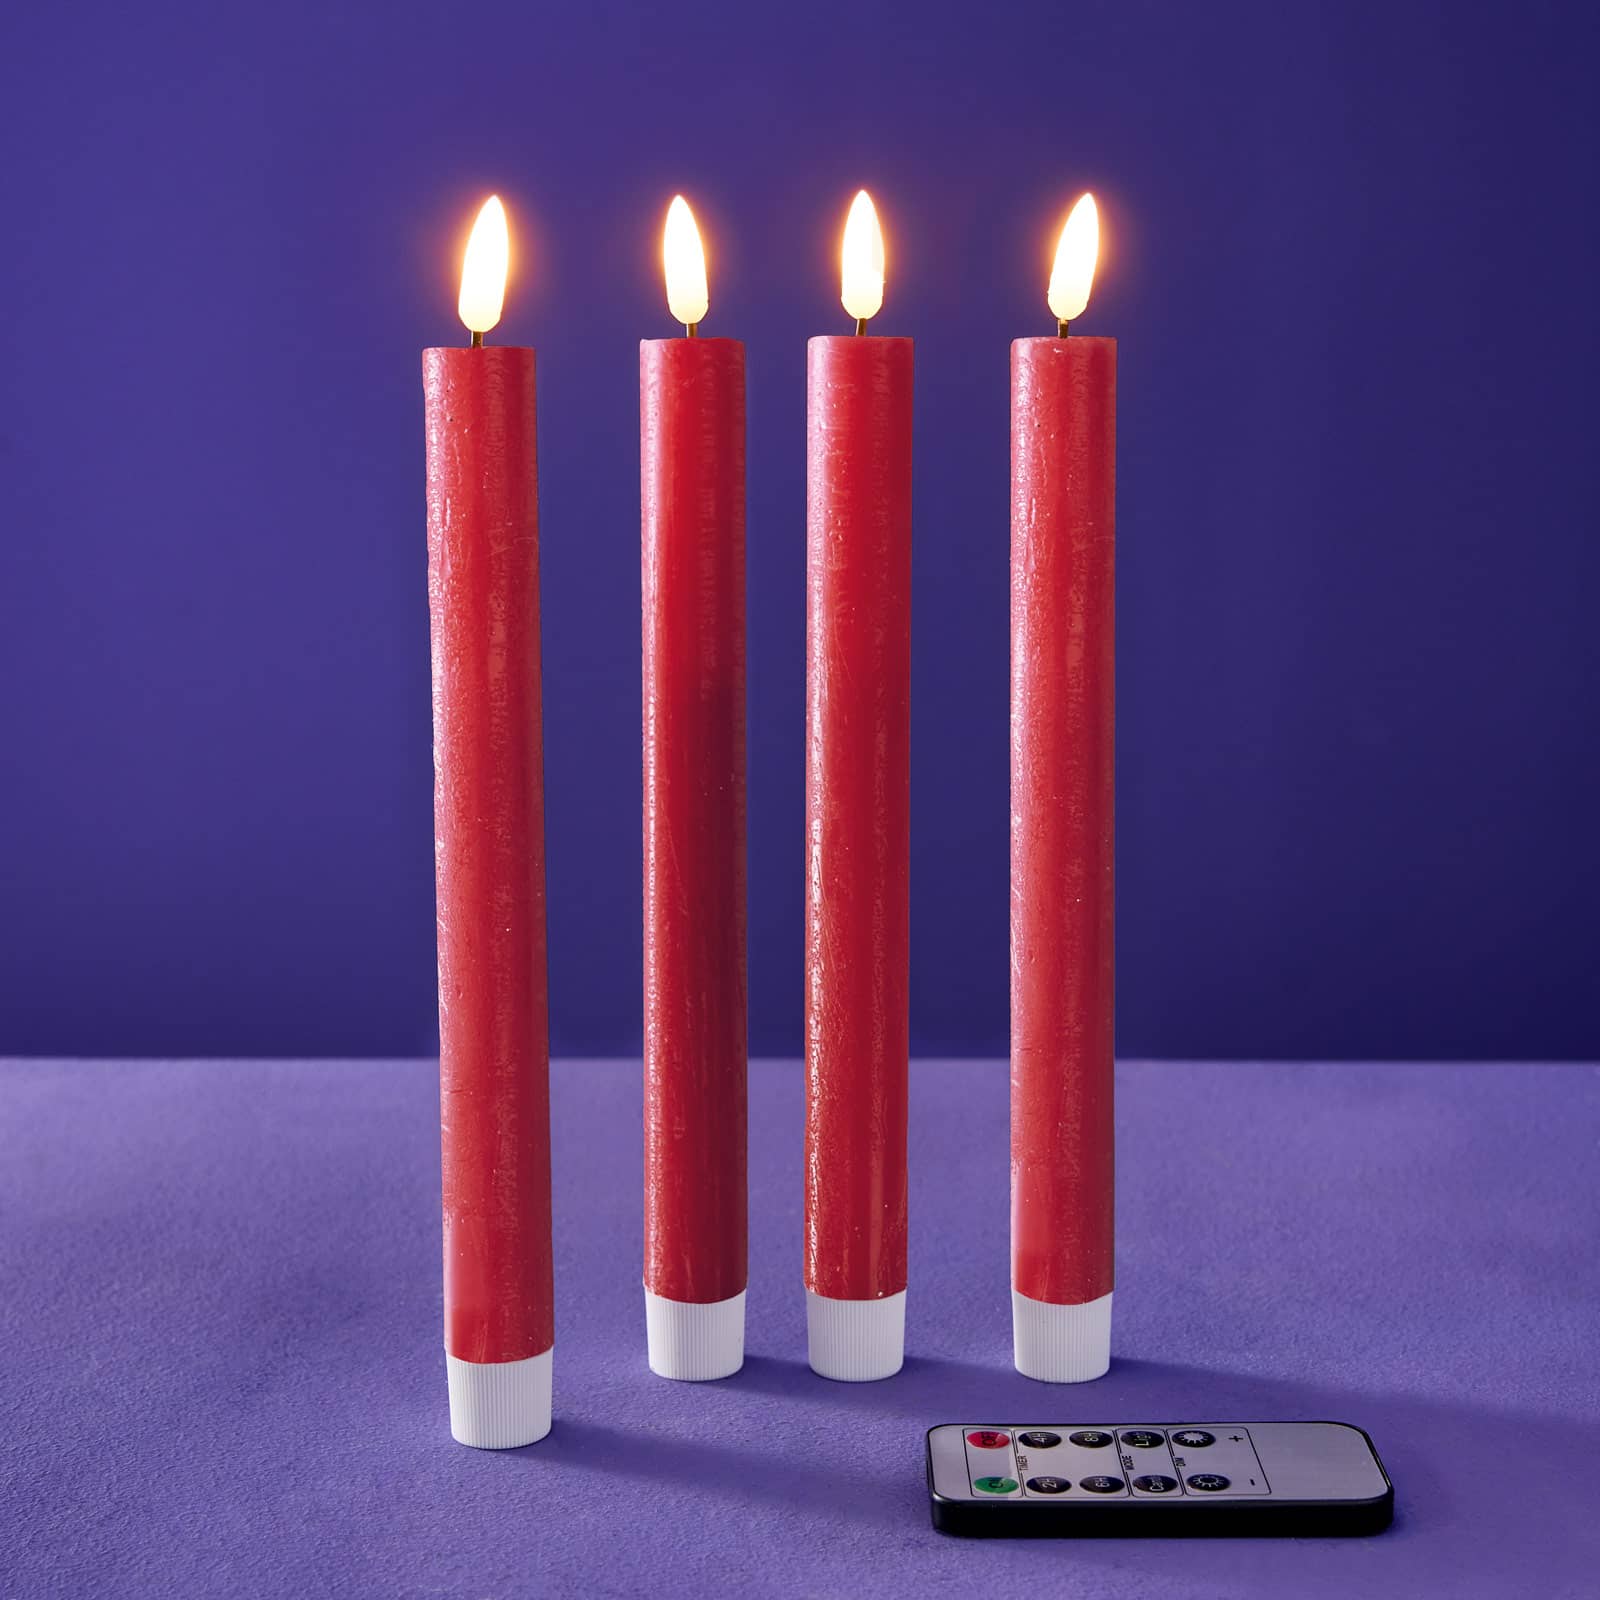 Lot de 4 bougies bâtons LED, rouge, cire véritable/plastique/LED, H. 24,5  cm avec télécommande (pile CR2025 incluse), 4 fonctions minuterie,  variable, 2 modes d'éclairage, fonctionne sur piles : 2xAAA (non incluses)